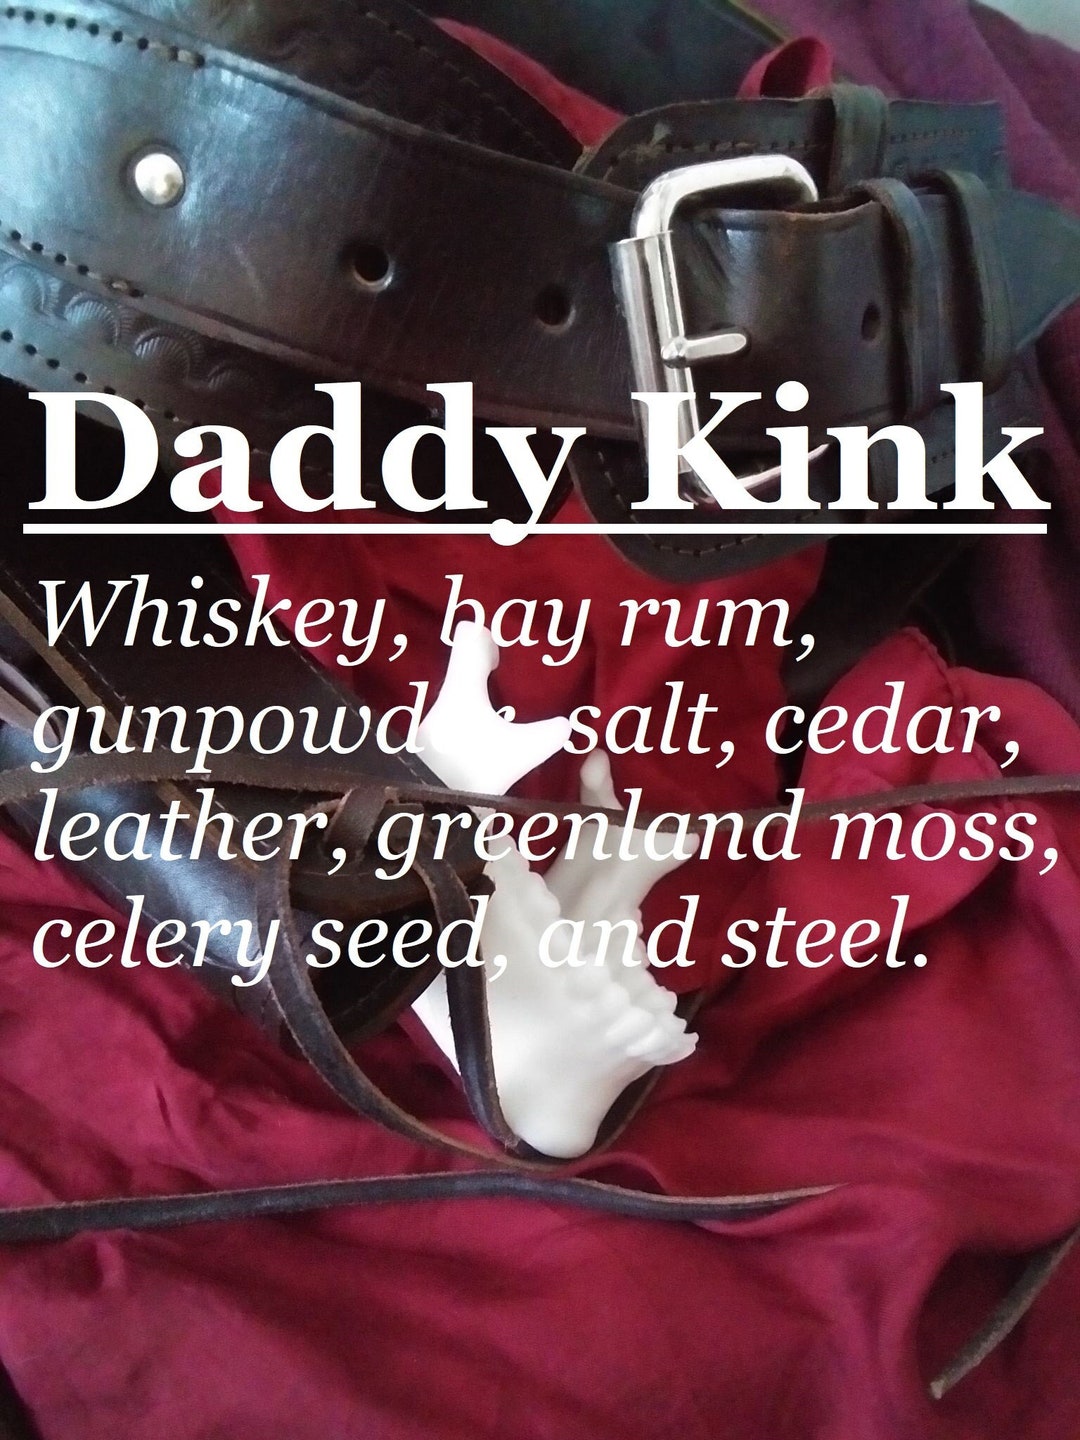 Daddy Kink Fragrance whiskey, Bay Rum, Gunpowder, Salt, Cedar, Leather,  Greenland Moss, Celery Seed, Steel - Etsy